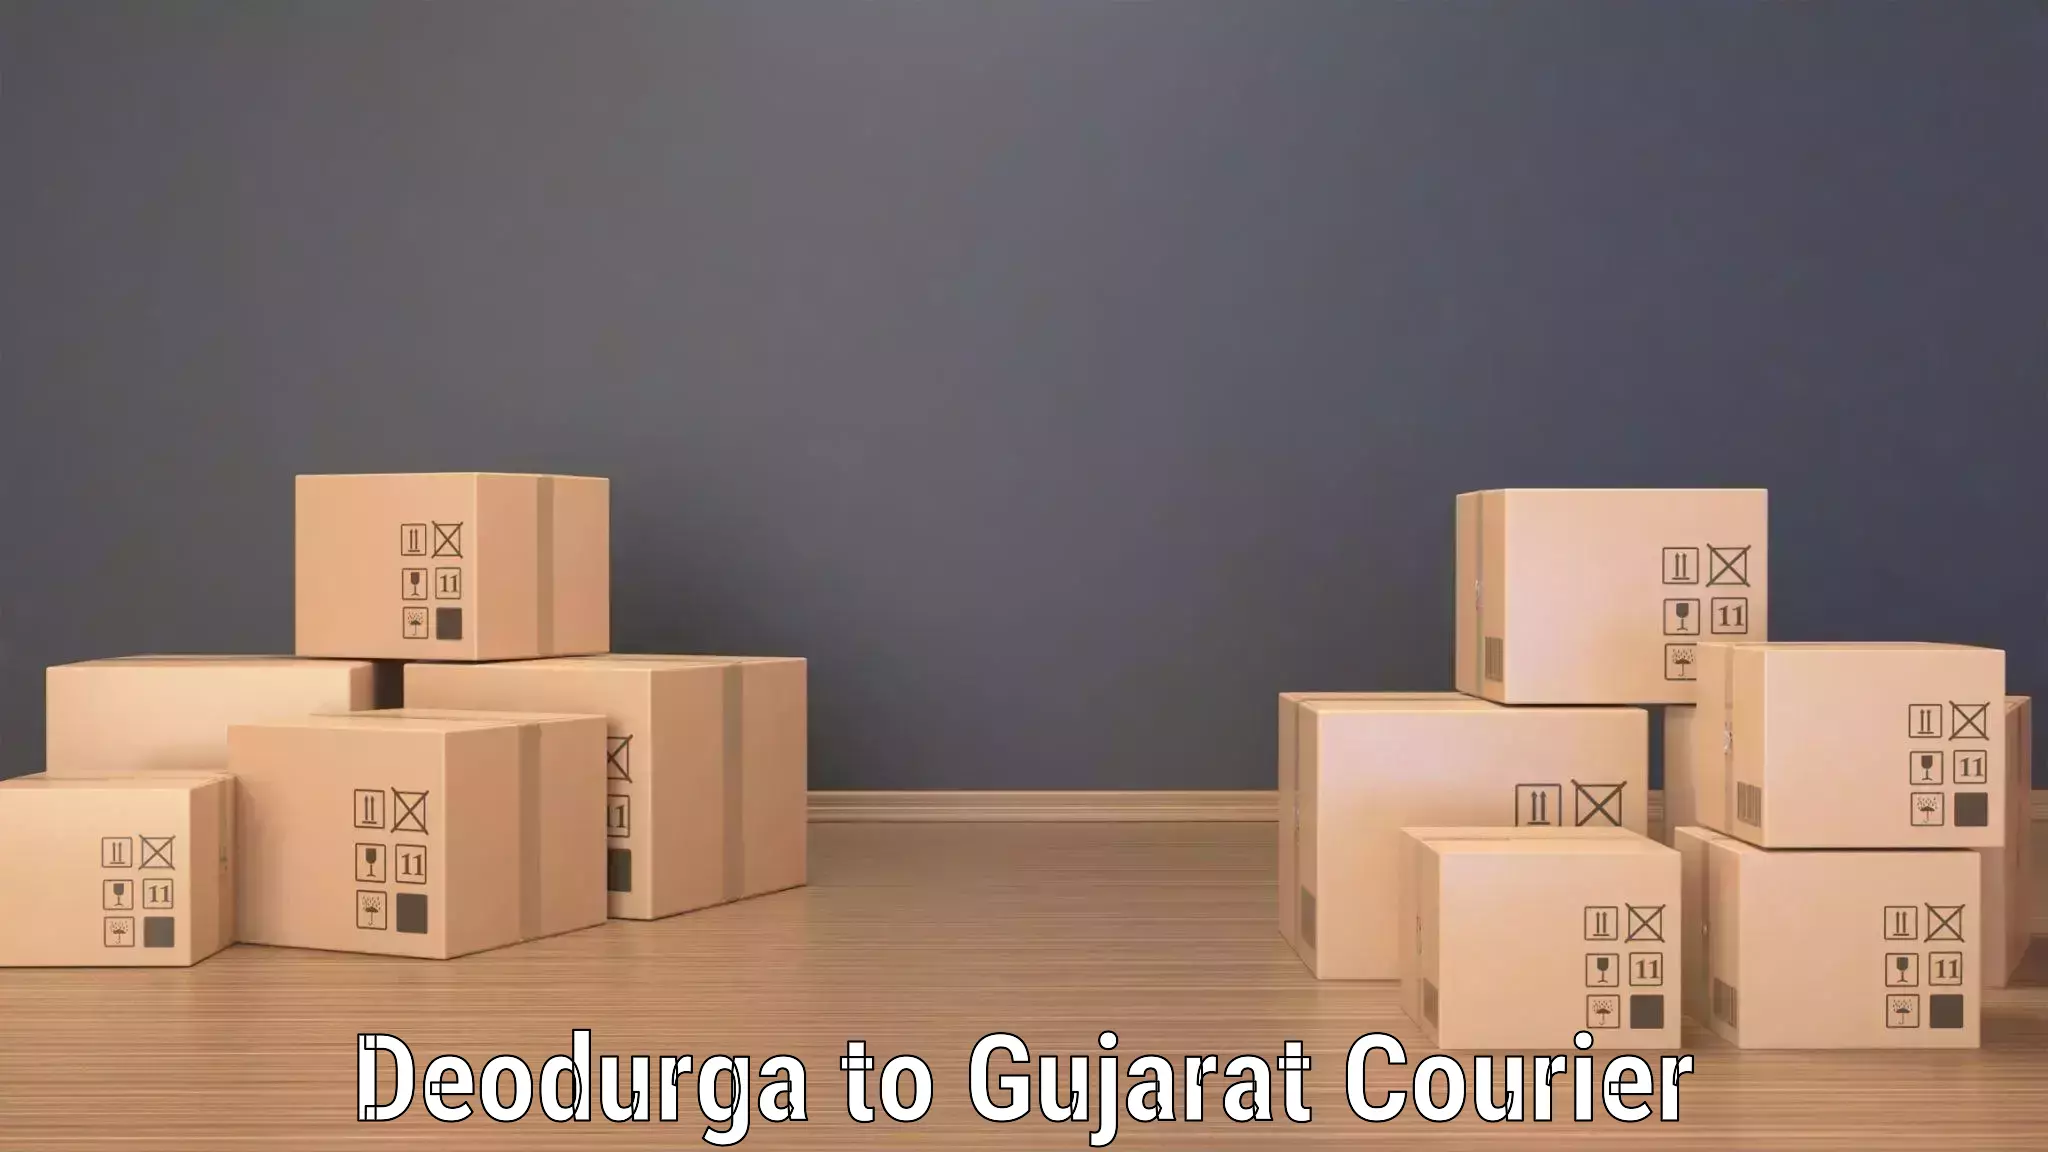 Premium courier services Deodurga to Patdi